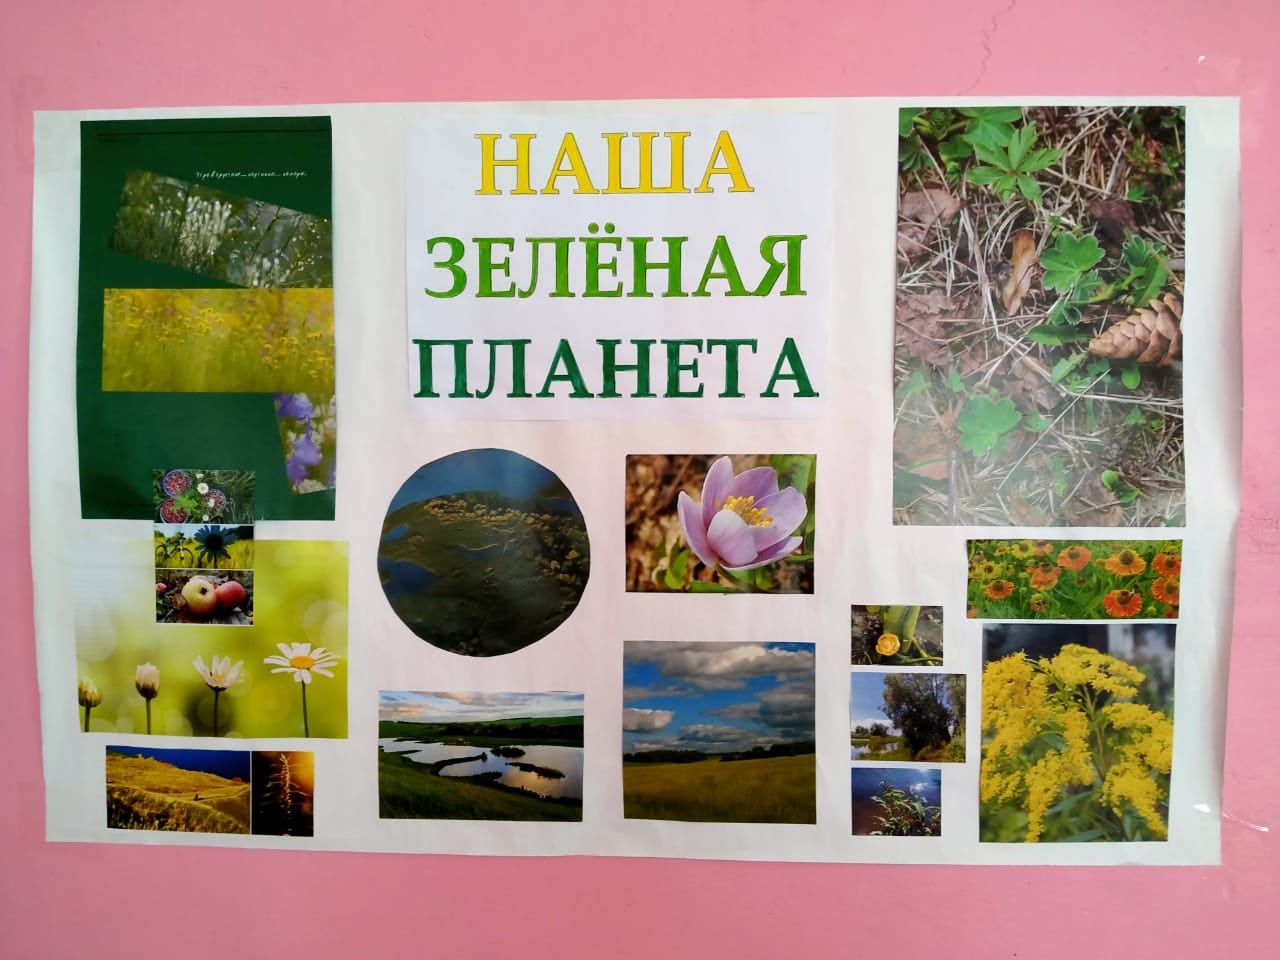 Бураковские школьники узнали историю Красной книги